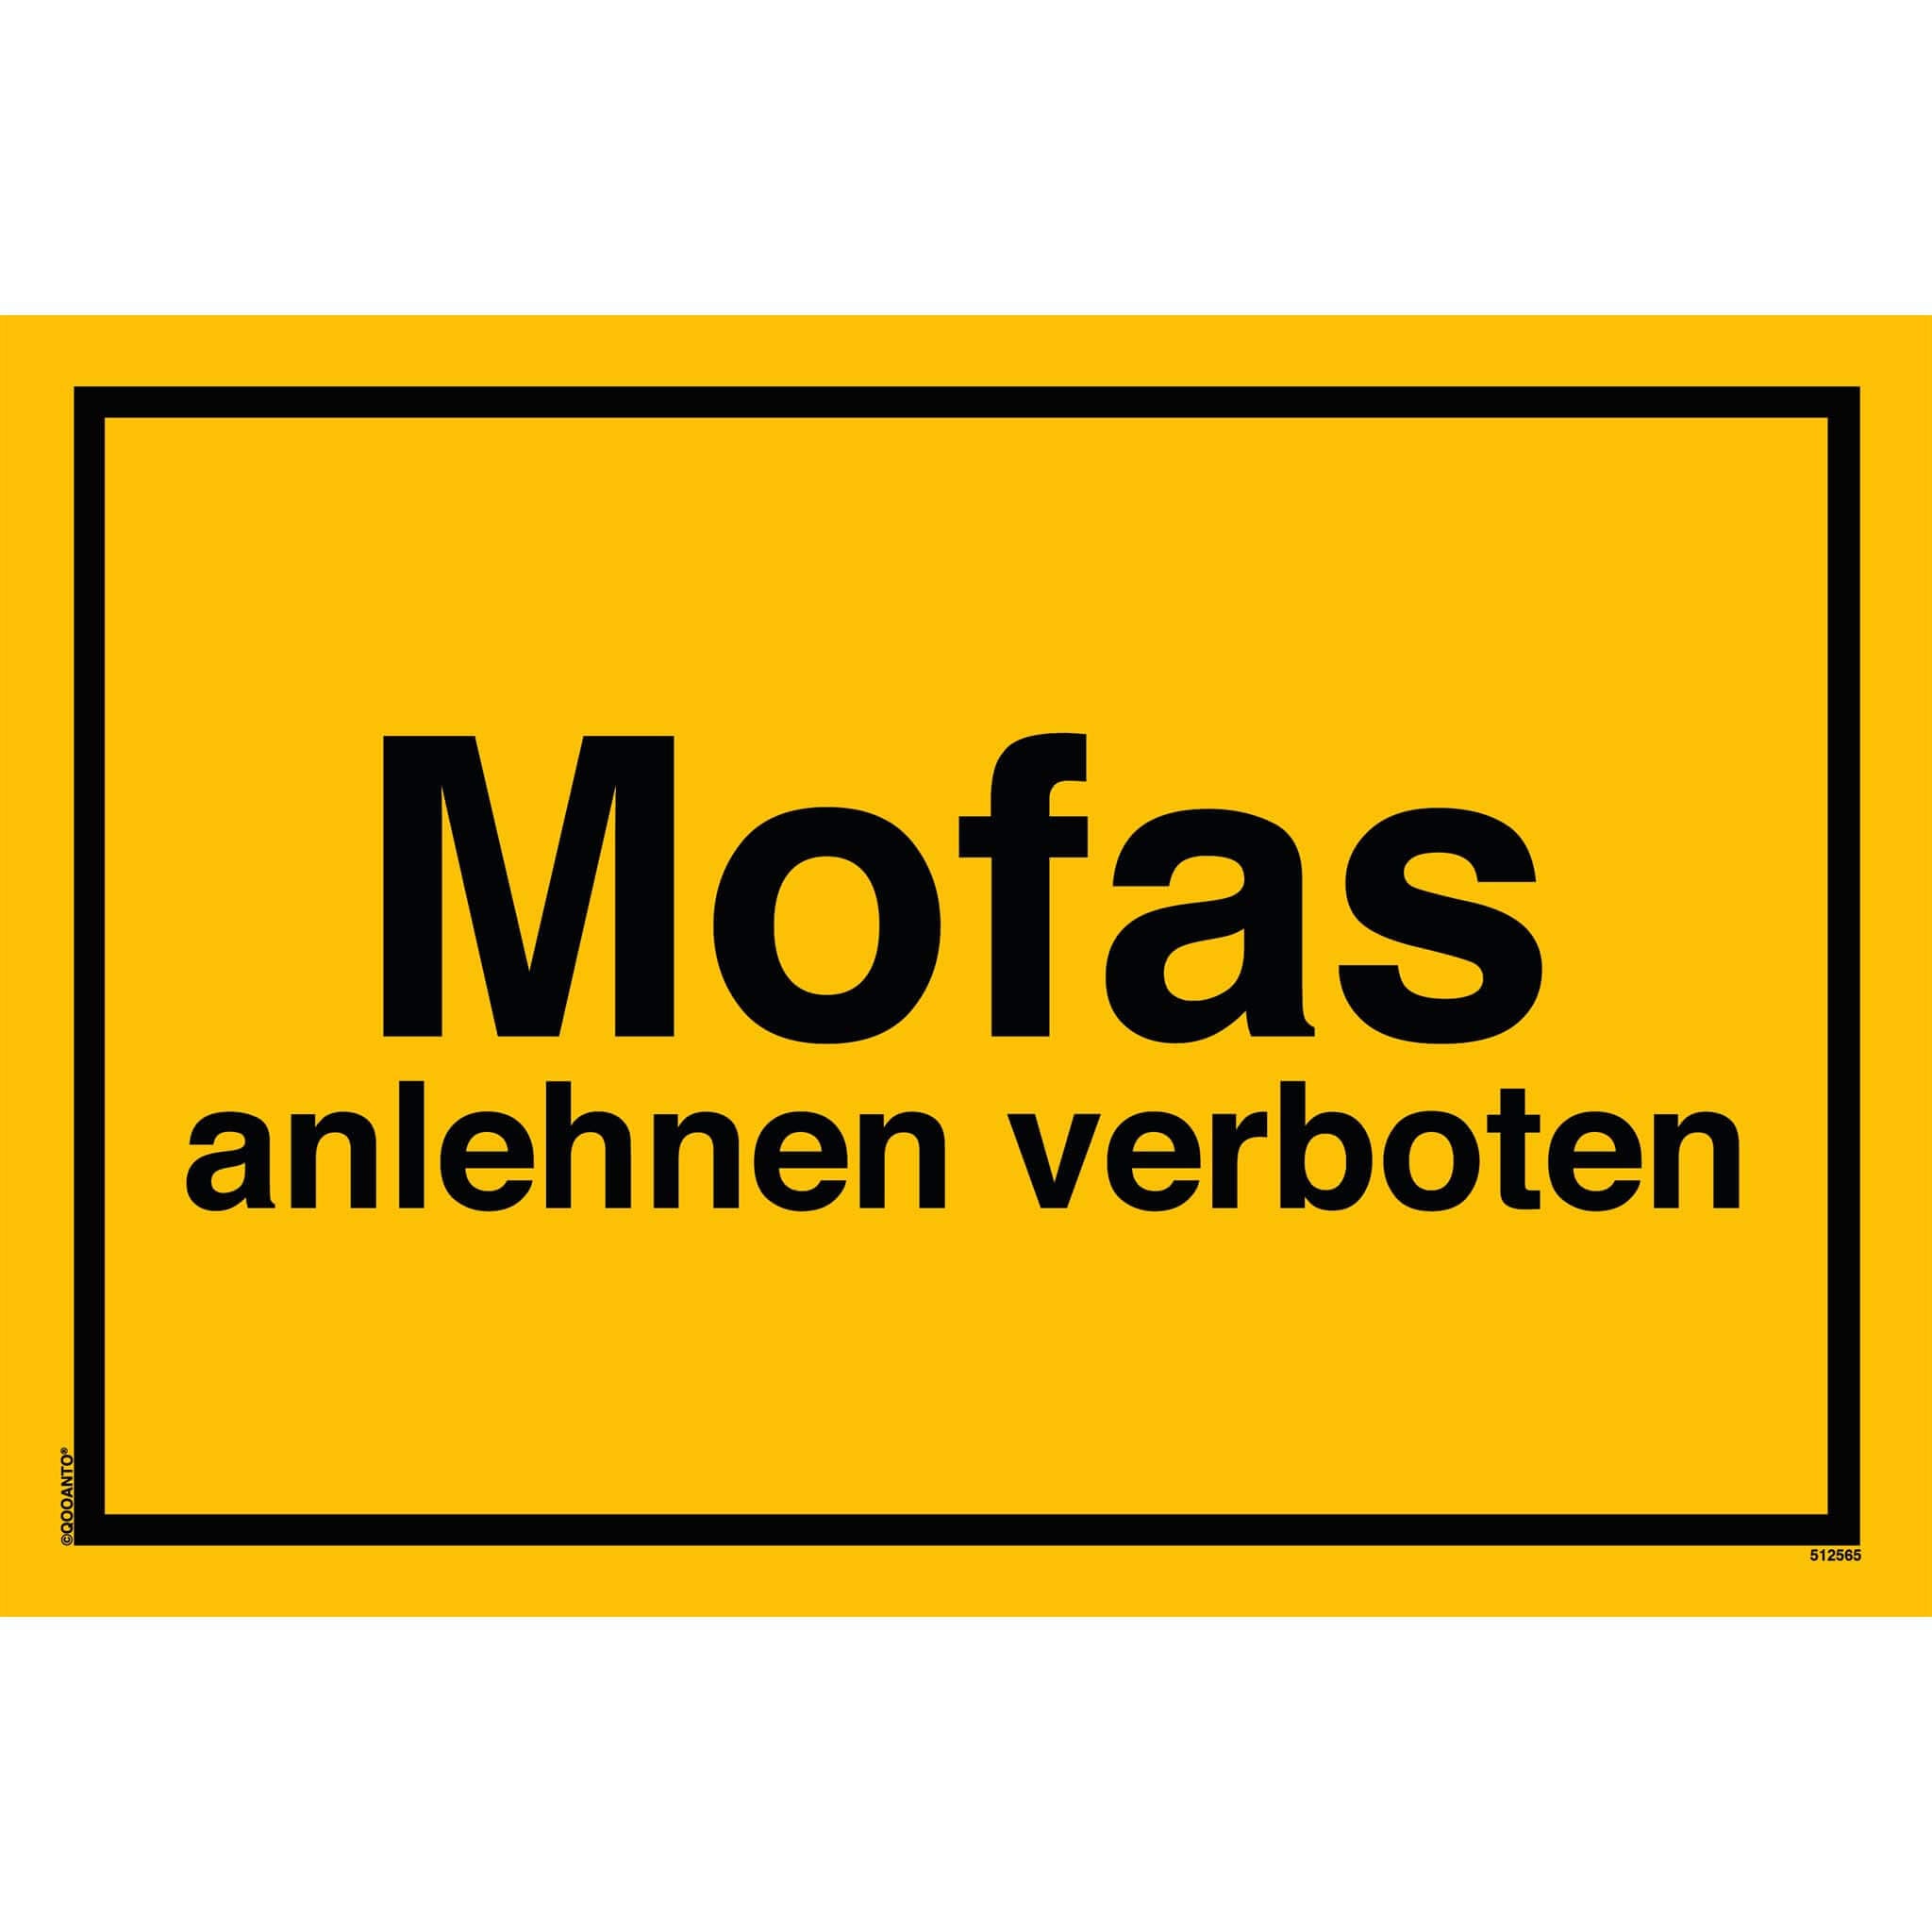 Mofas anlehnen verboten, gelb, Schild